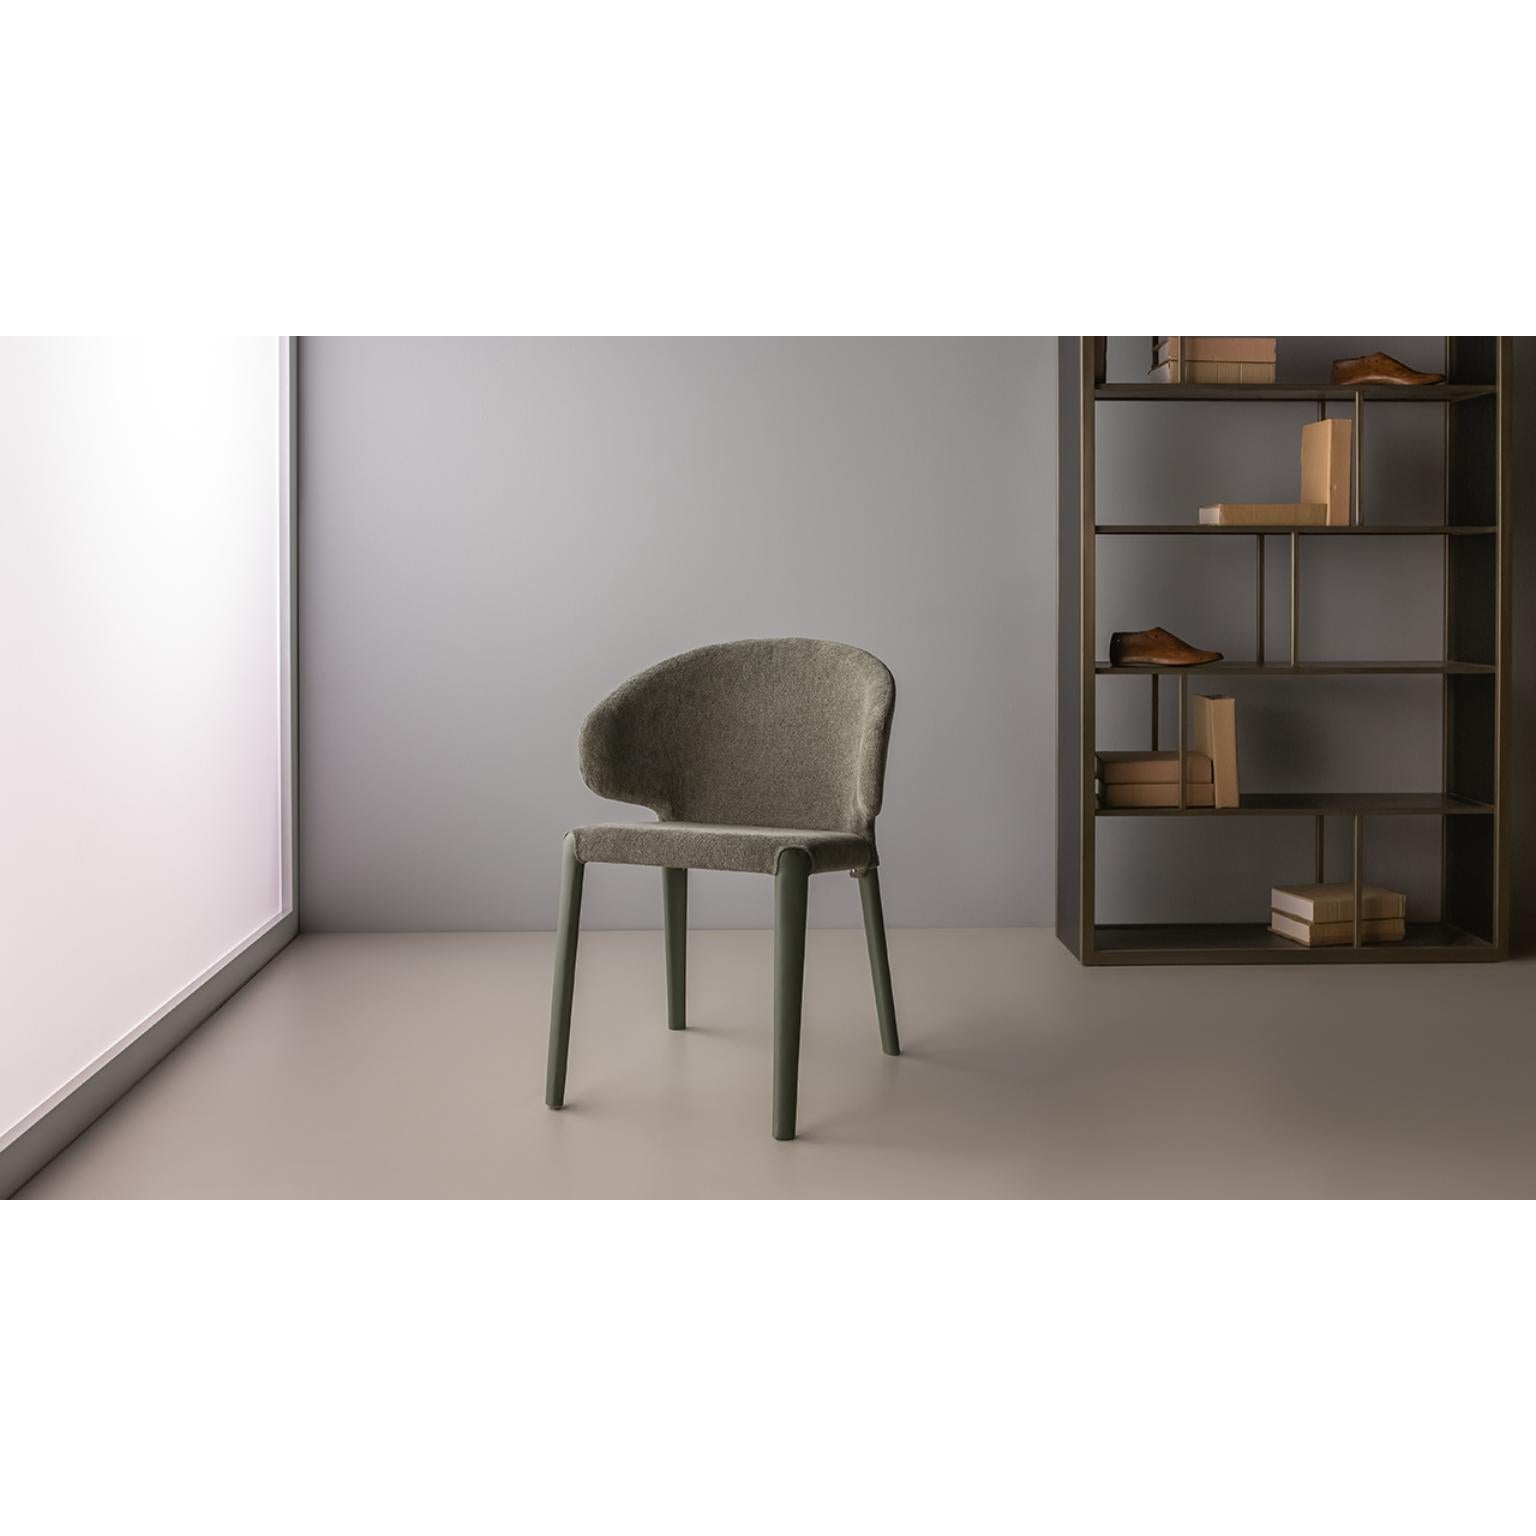 Hella-Stuhl von Doimo Brasil
Abmessungen: B 59 x T 58 x H 78 cm 
MATERIALIEN: Metall, Sitz gepolstert.


Mit der Absicht, guten Geschmack und Persönlichkeit zu vermitteln, entschlüsselt Doimo Trends und folgt der Entwicklung des Menschen und seines